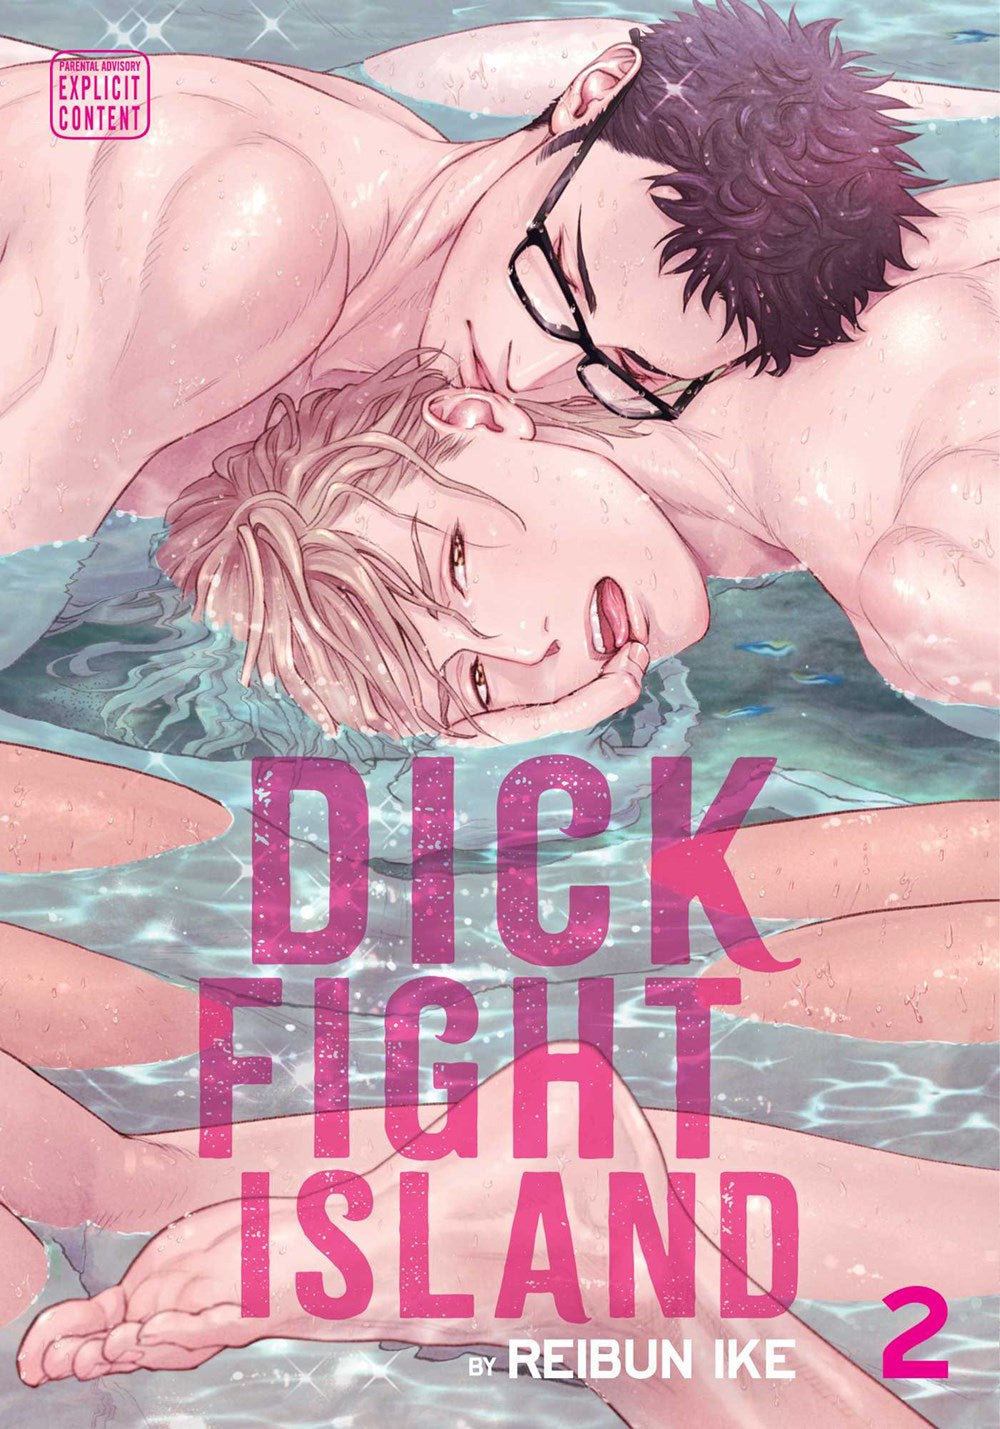 Dick Fight Island: Vol. 2